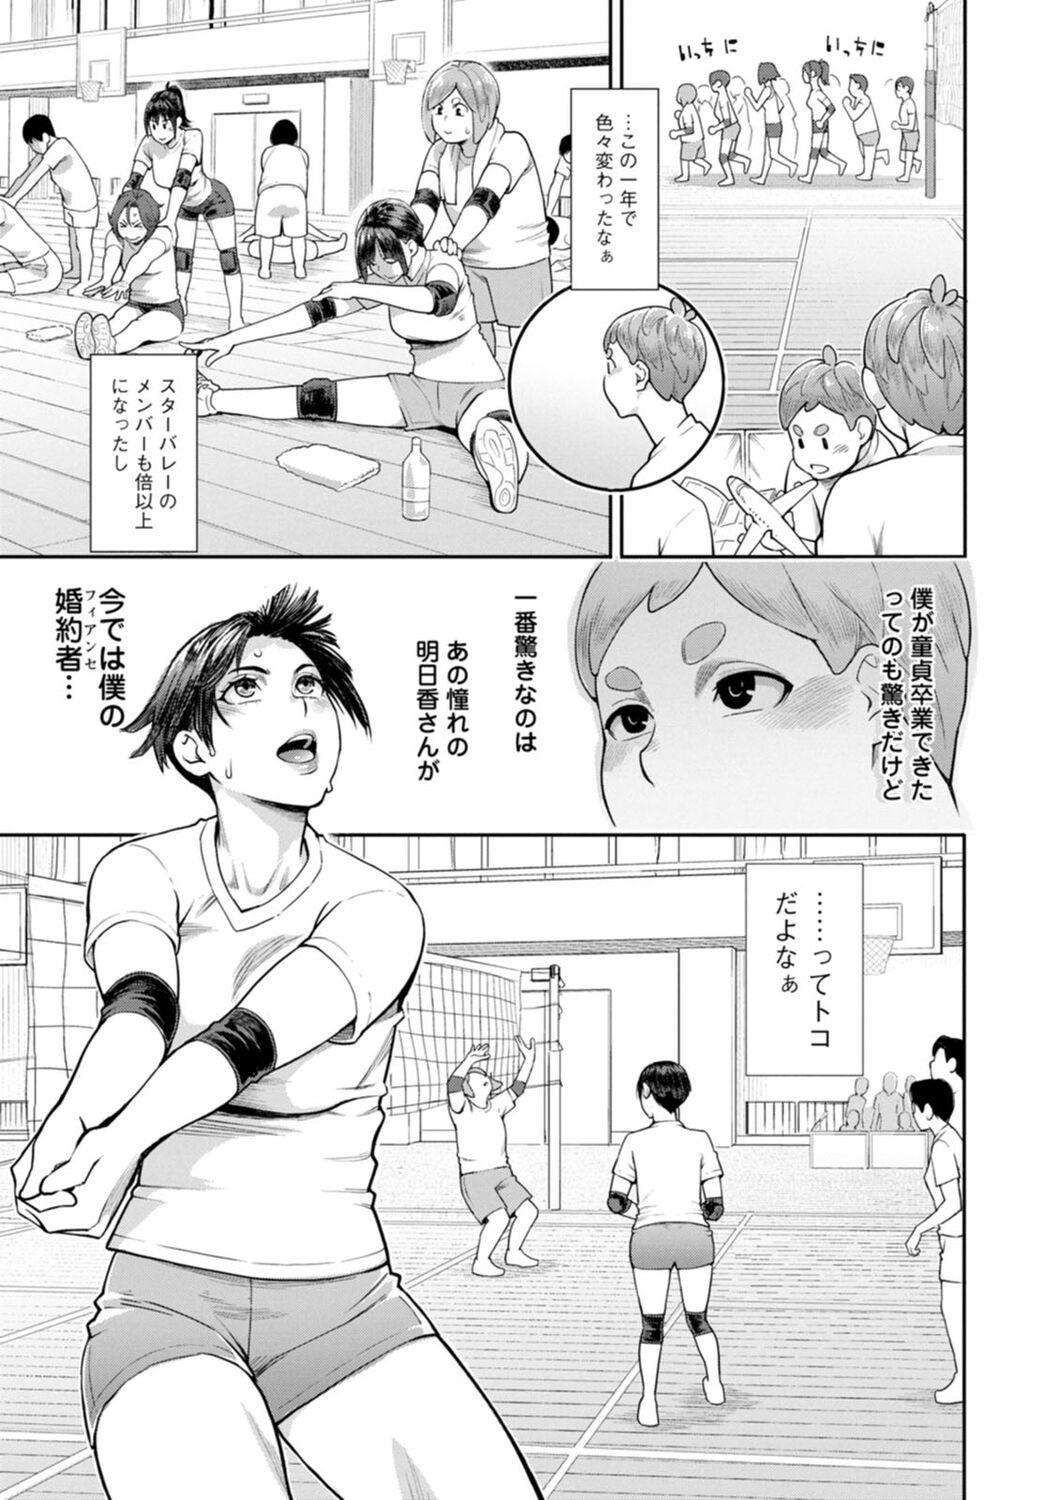 Hoshigaoka Star Volley 148